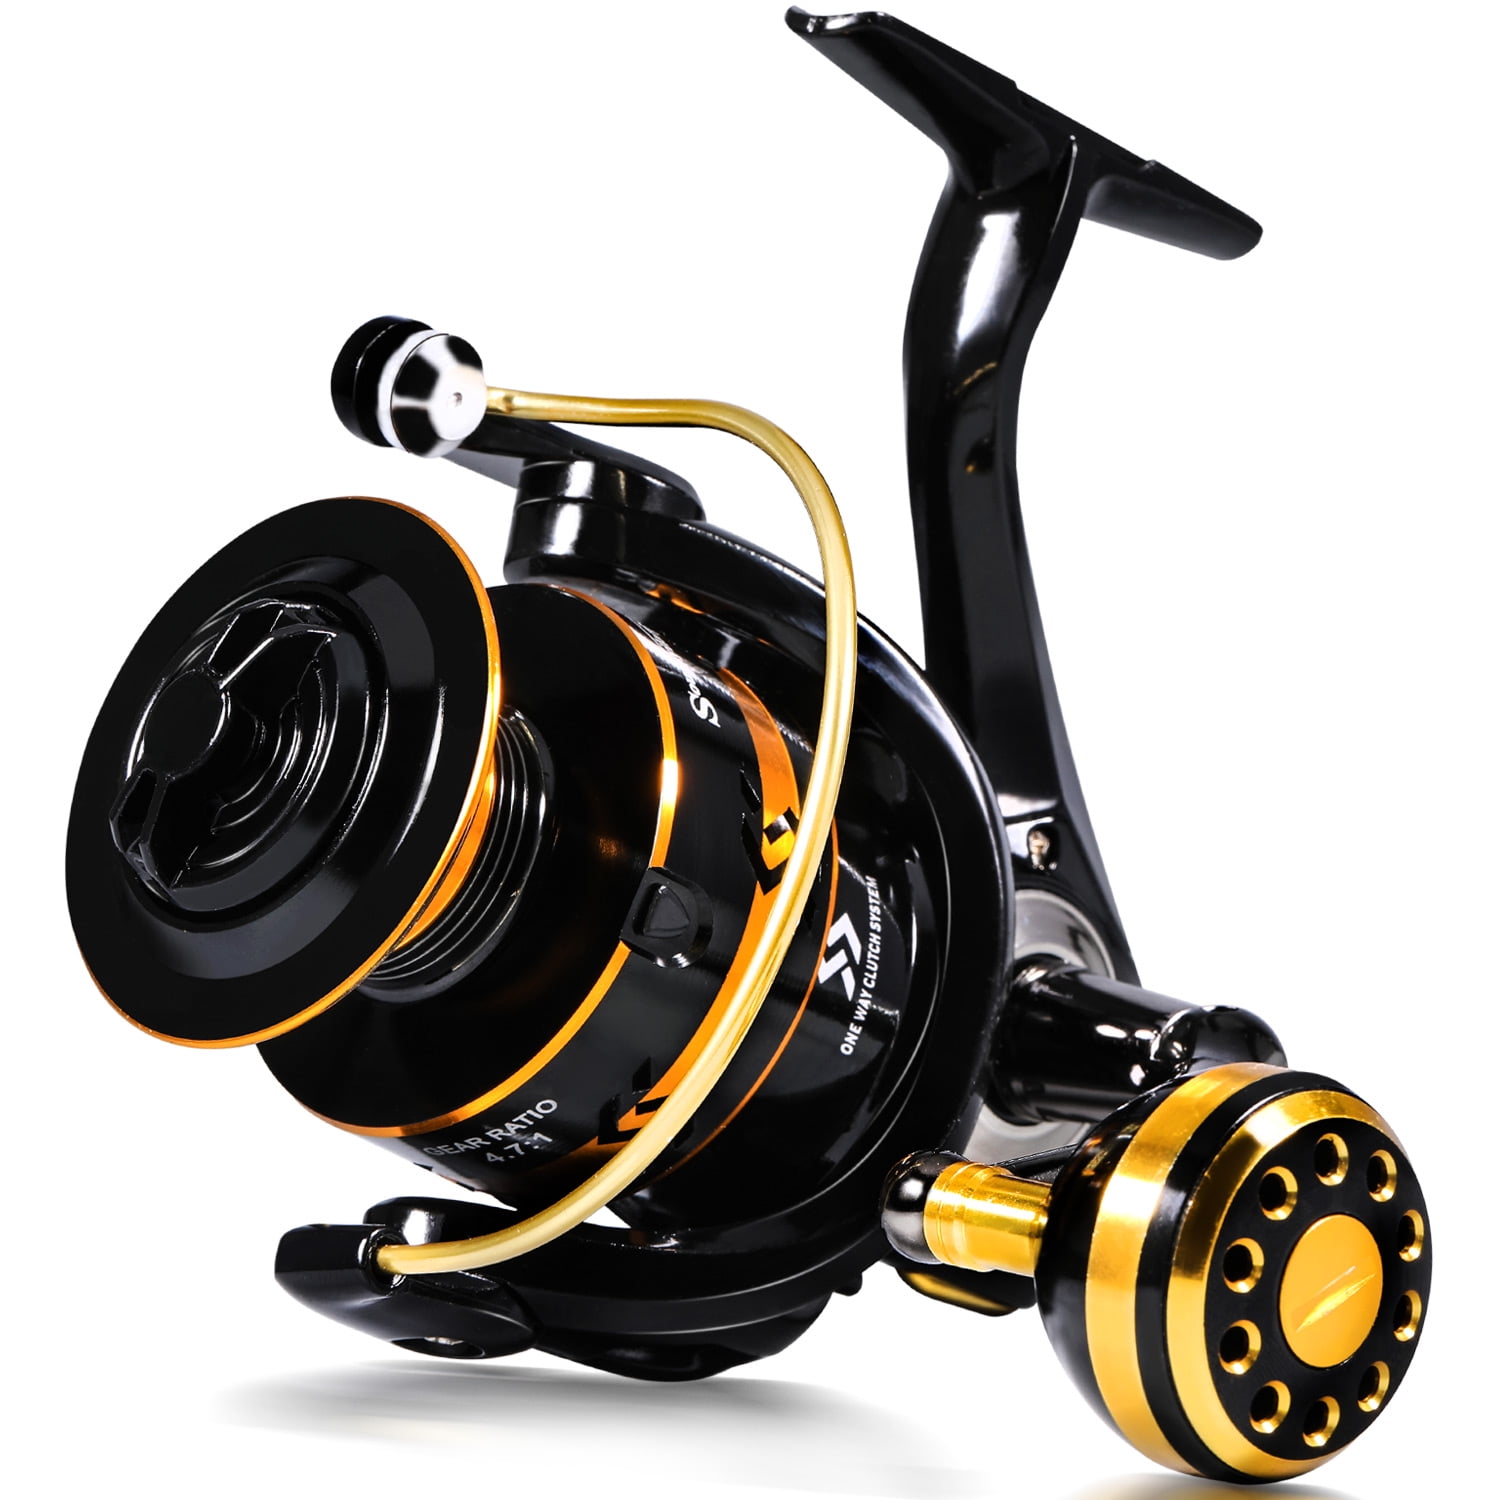 KastKing Brutus Spinning Reel,Size 3000 Fishing Reel : : Sporting  Goods